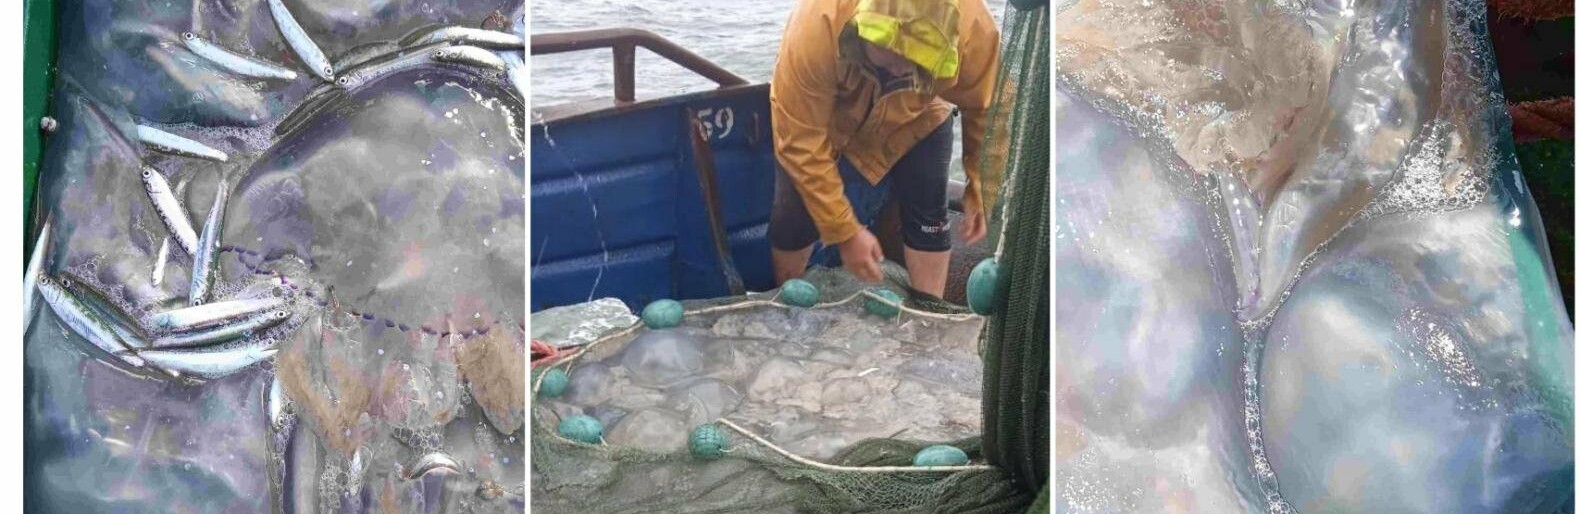 В Азовском море появились медузы-гиганты весом больше 10 килограммов